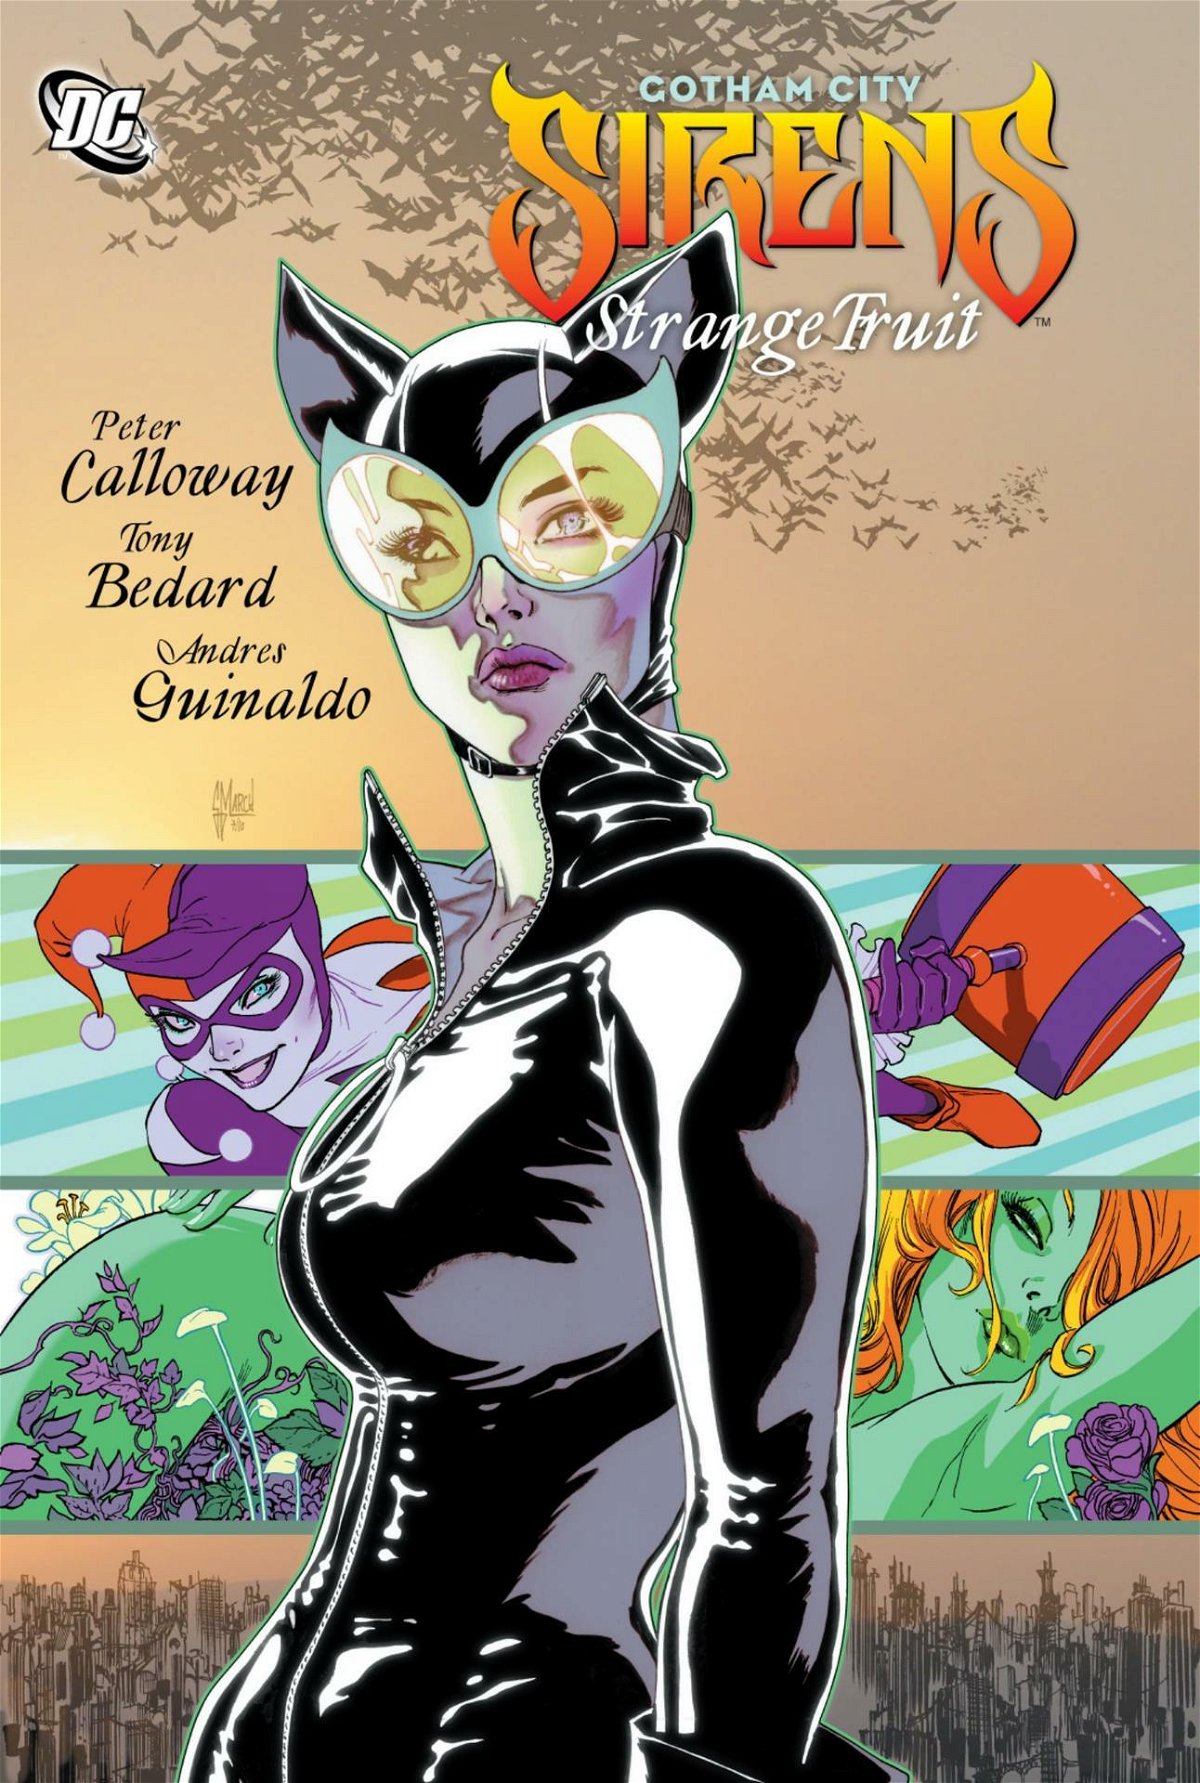 Catwoman in copertina per il fumetto di Gotham City Sirens